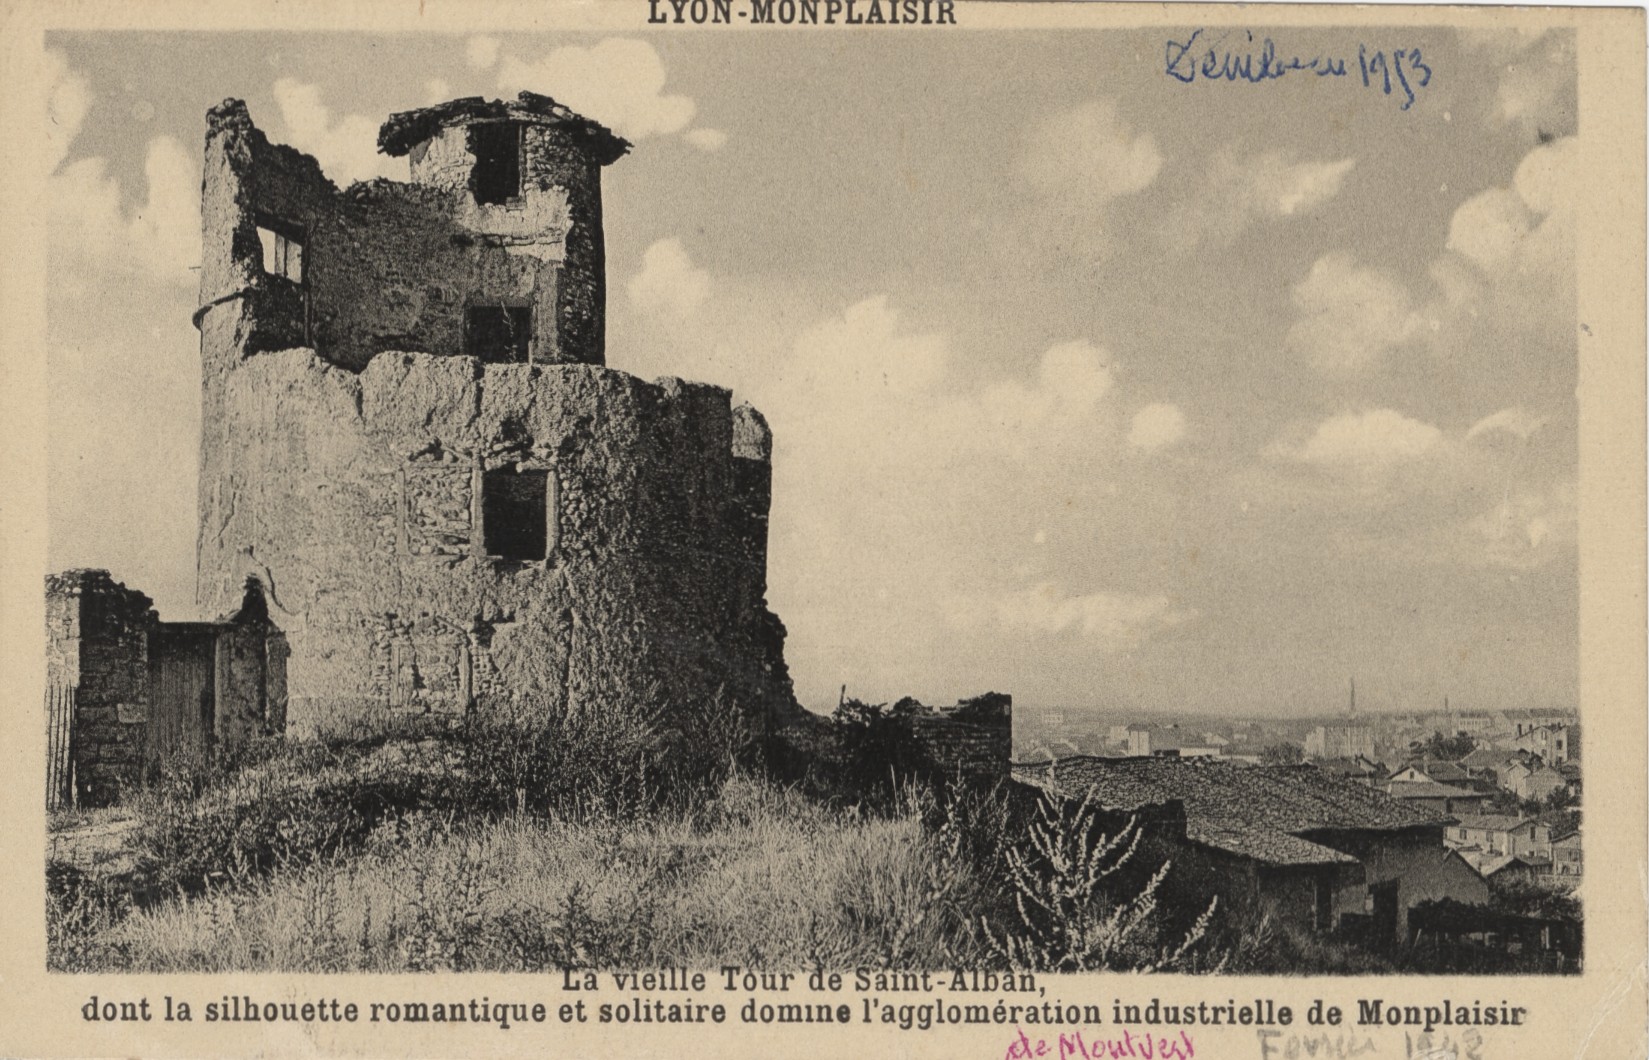 Lyon-Monplaisir - La vieille Tour de Saint-Alban, détruite, située vers l'actuelle rue Saint-Alban : carte postale NB (vers 1910, cote : 4FI/320)